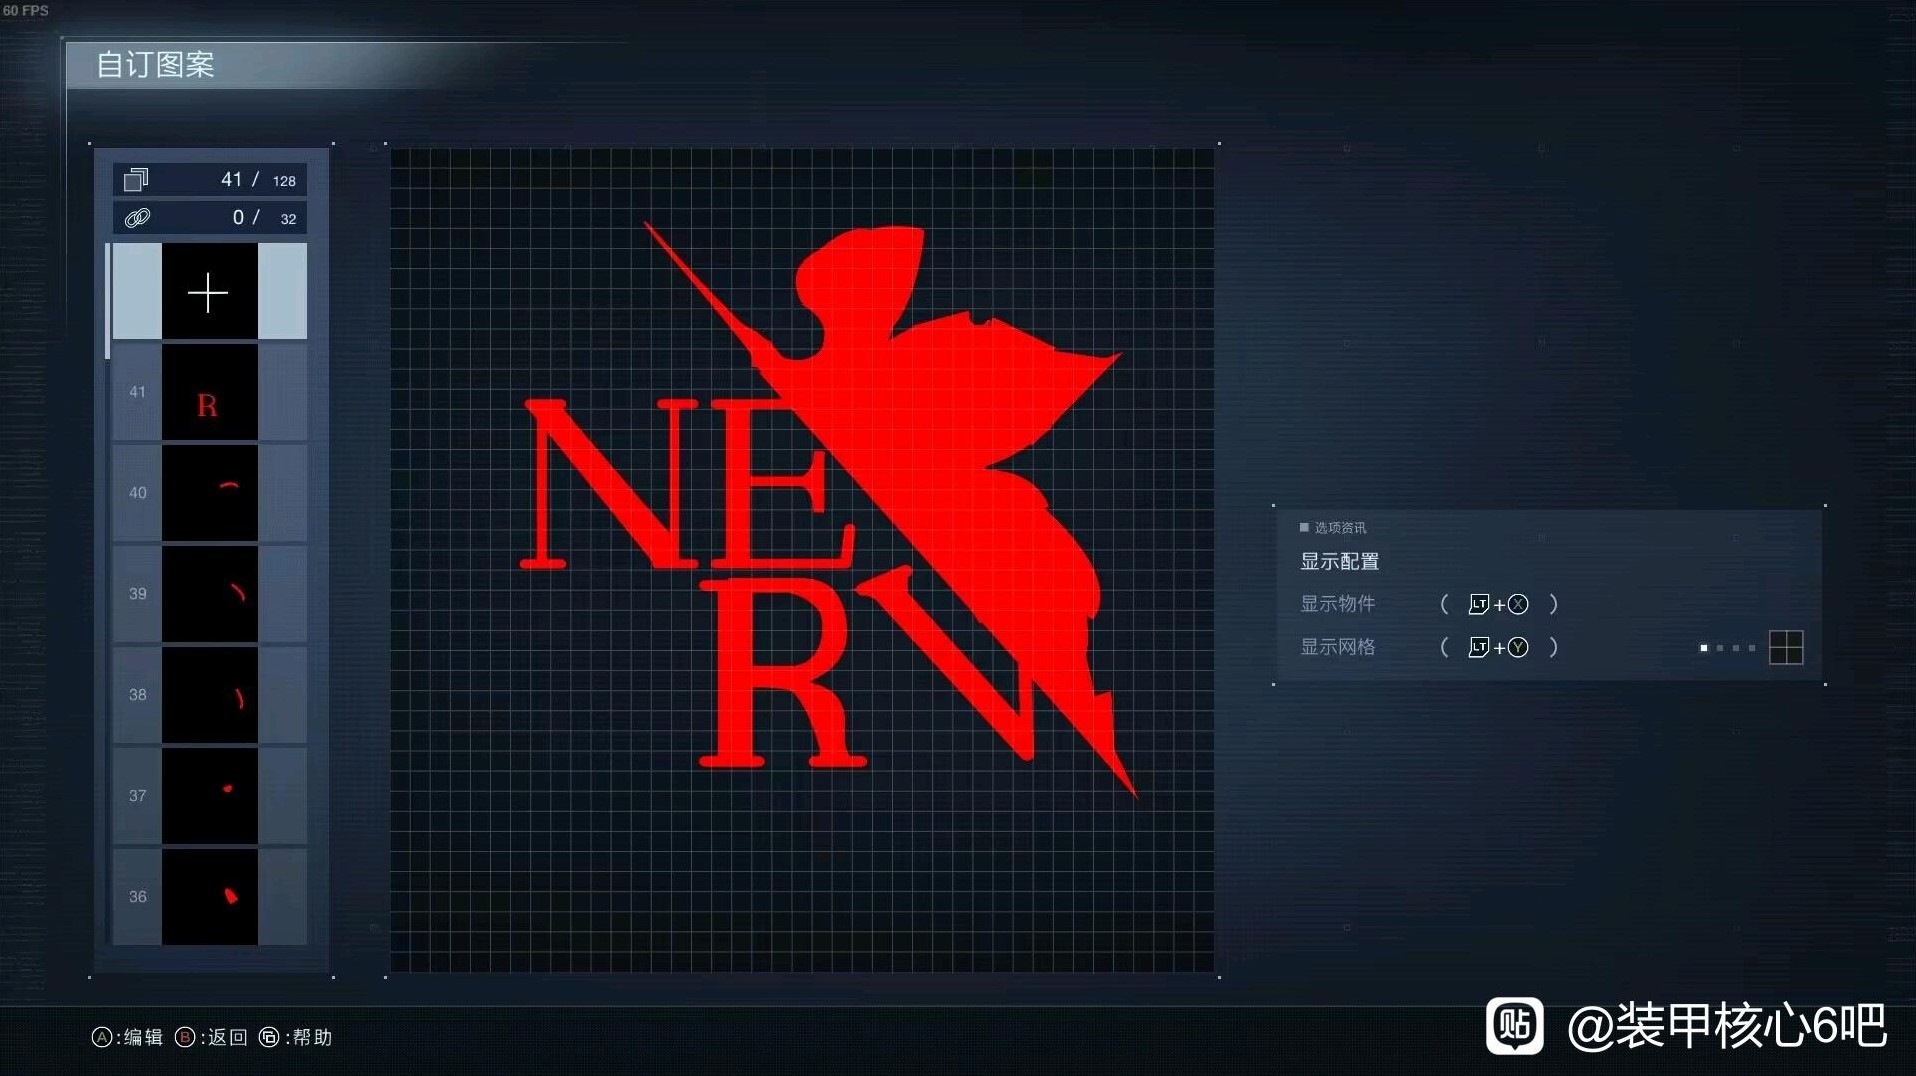 《装甲核心6》新世纪福音战士NERV图章分享